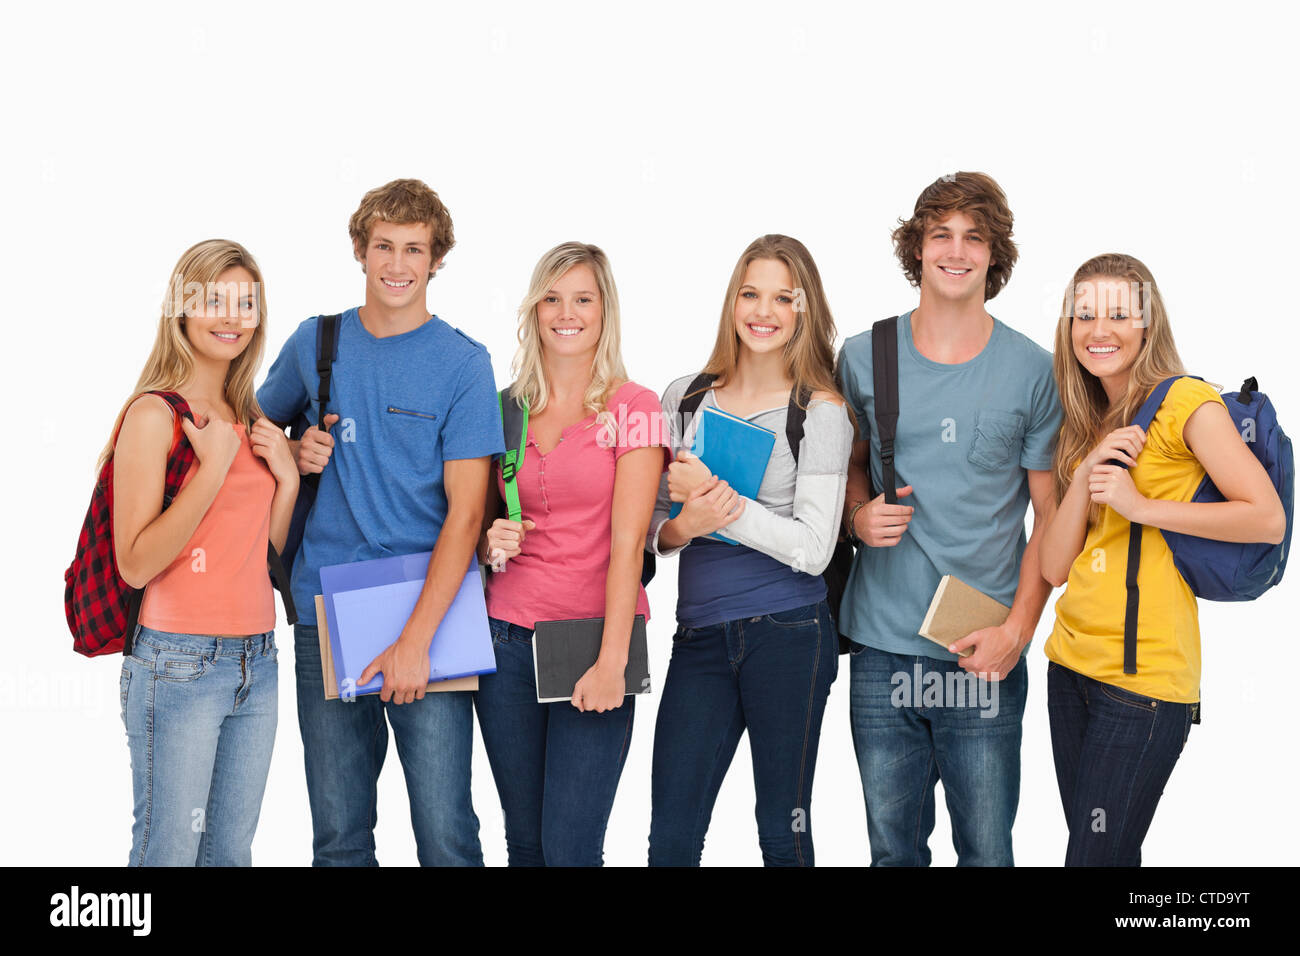 Smiling students conçu pour l'université Banque D'Images